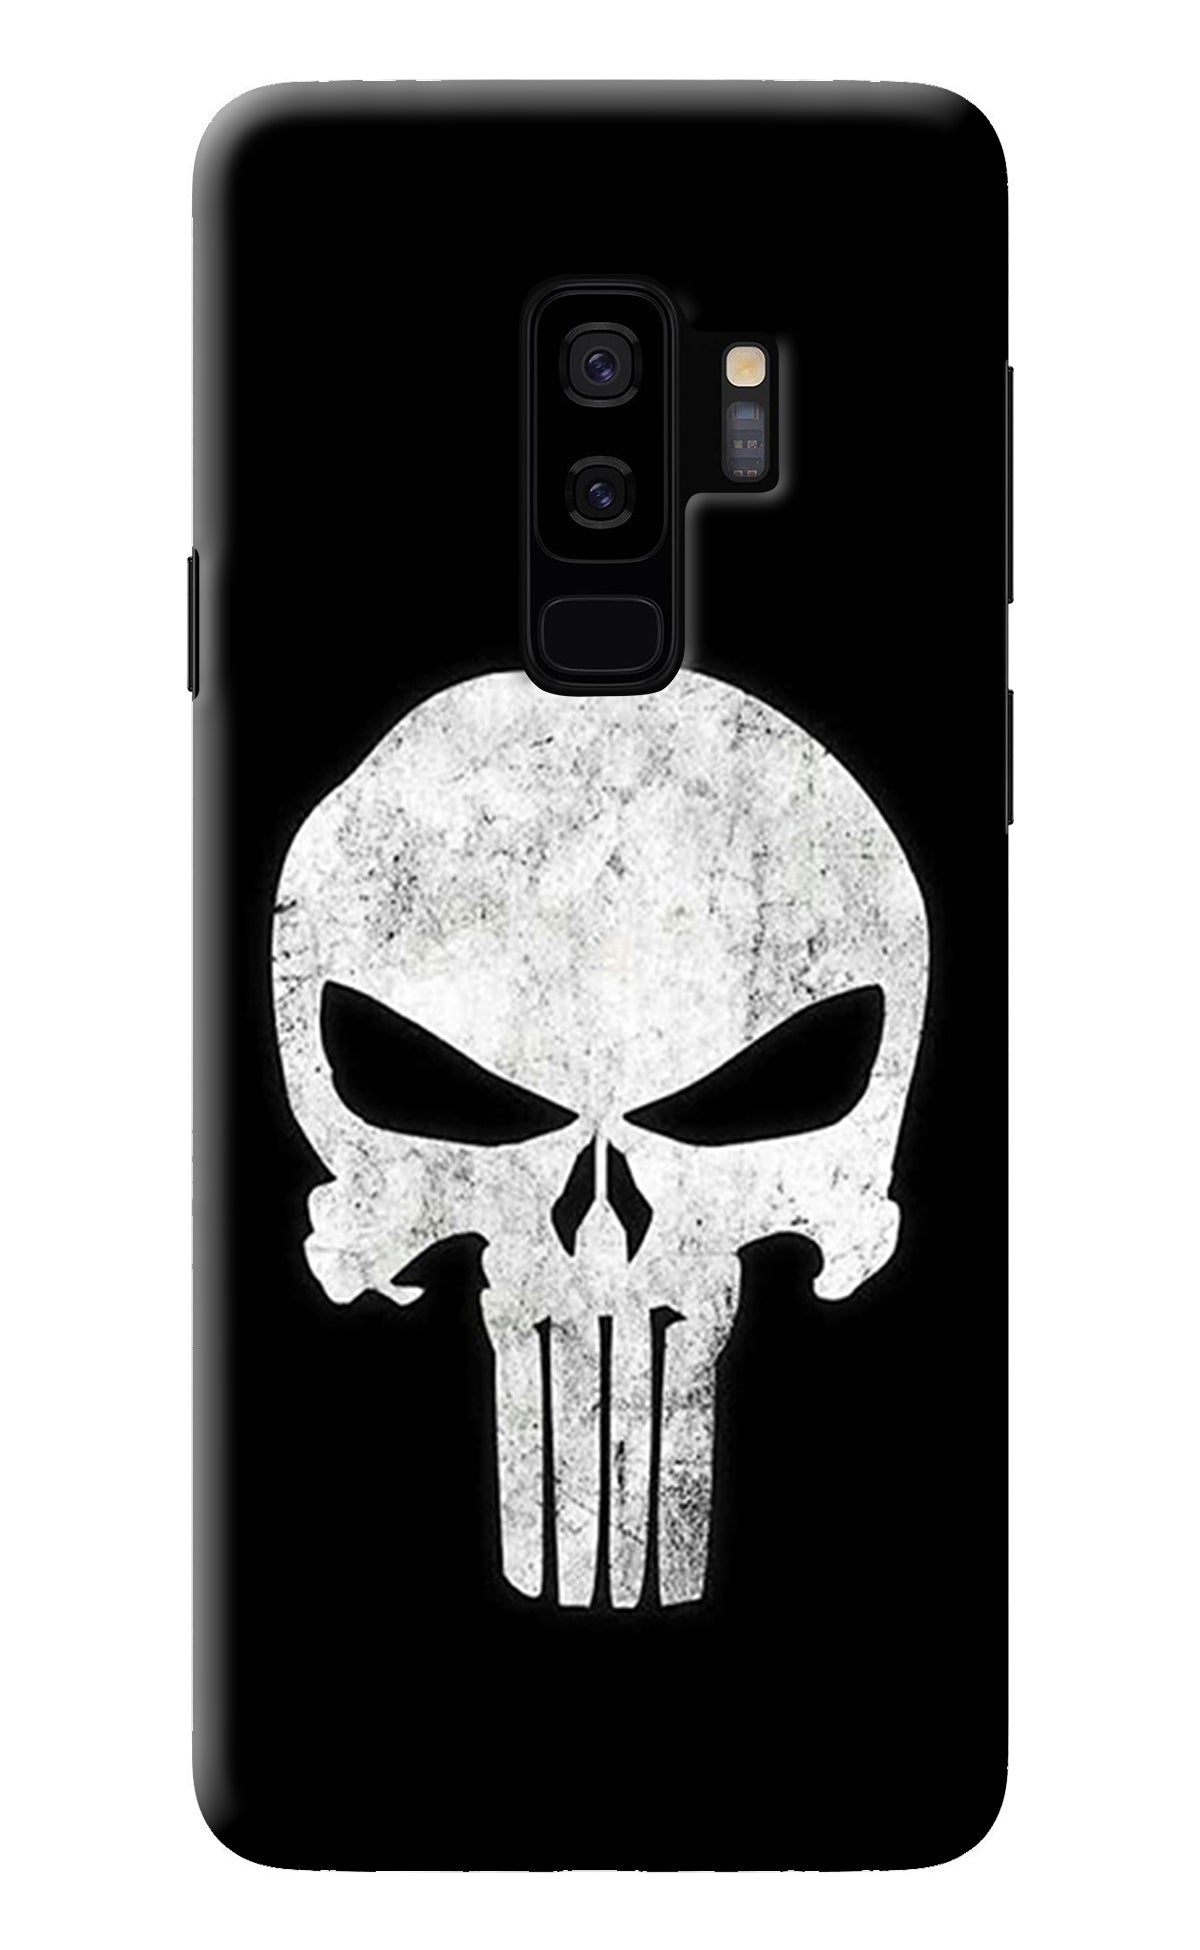 Punisher Skull Samsung S9 Plus Back Cover